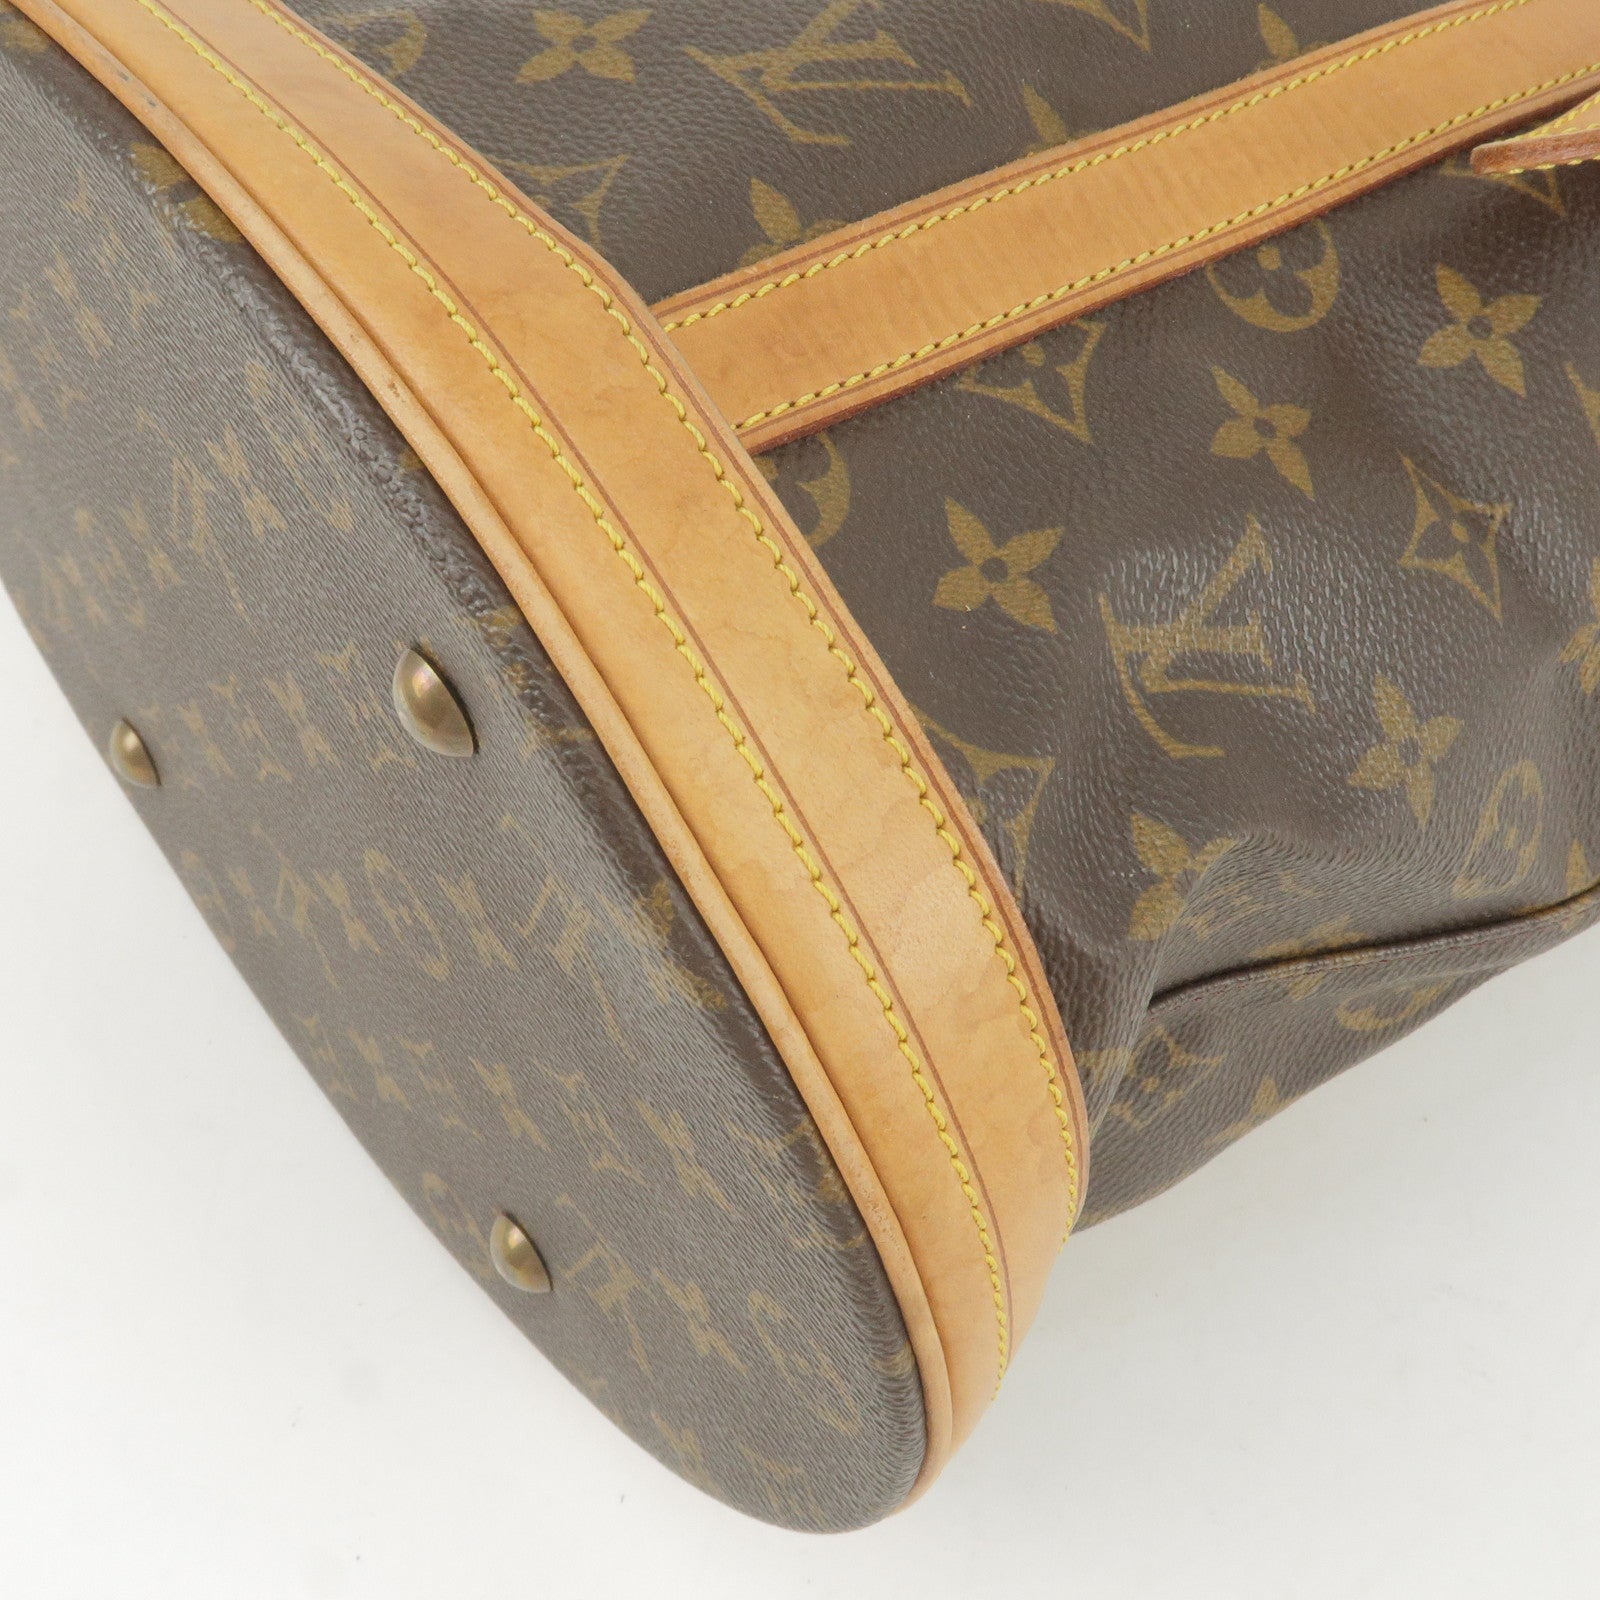 Sold at Auction: Louis Vuitton, Louis Vuitton Red Vernis Monceau Handbag